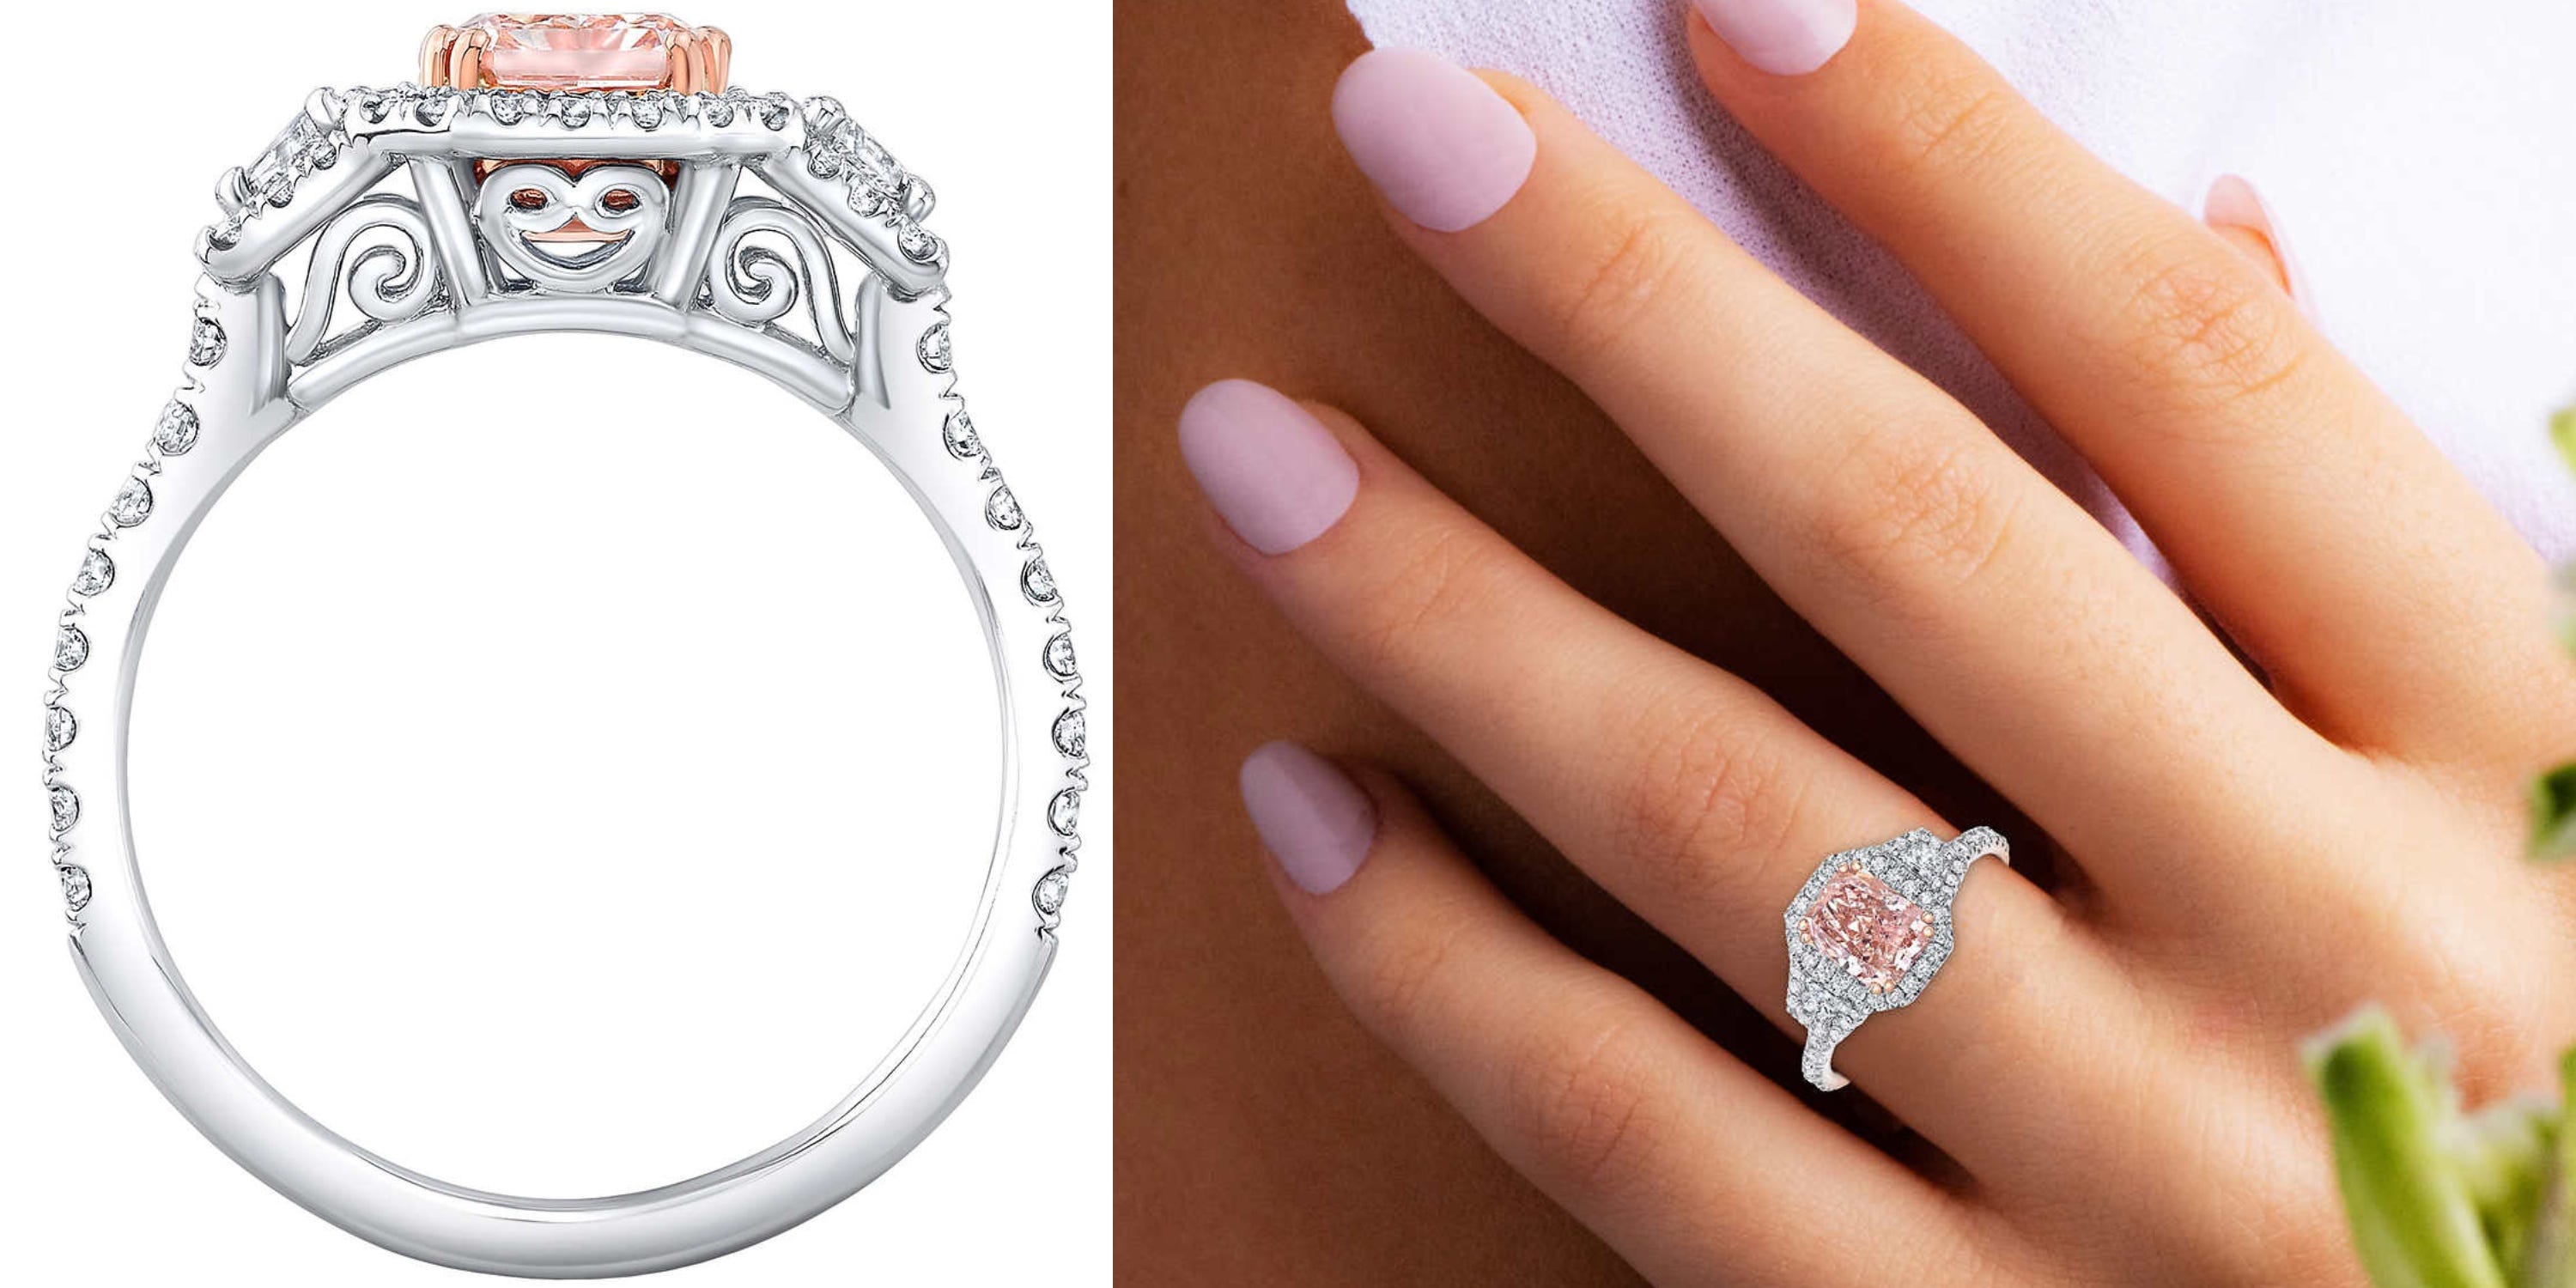 Costco Radiant Cut 1,54 ct Center VVS1 Clarity, Fancy Pink Diamond Platinum Halo Ring, abgebildet auf einer Hand